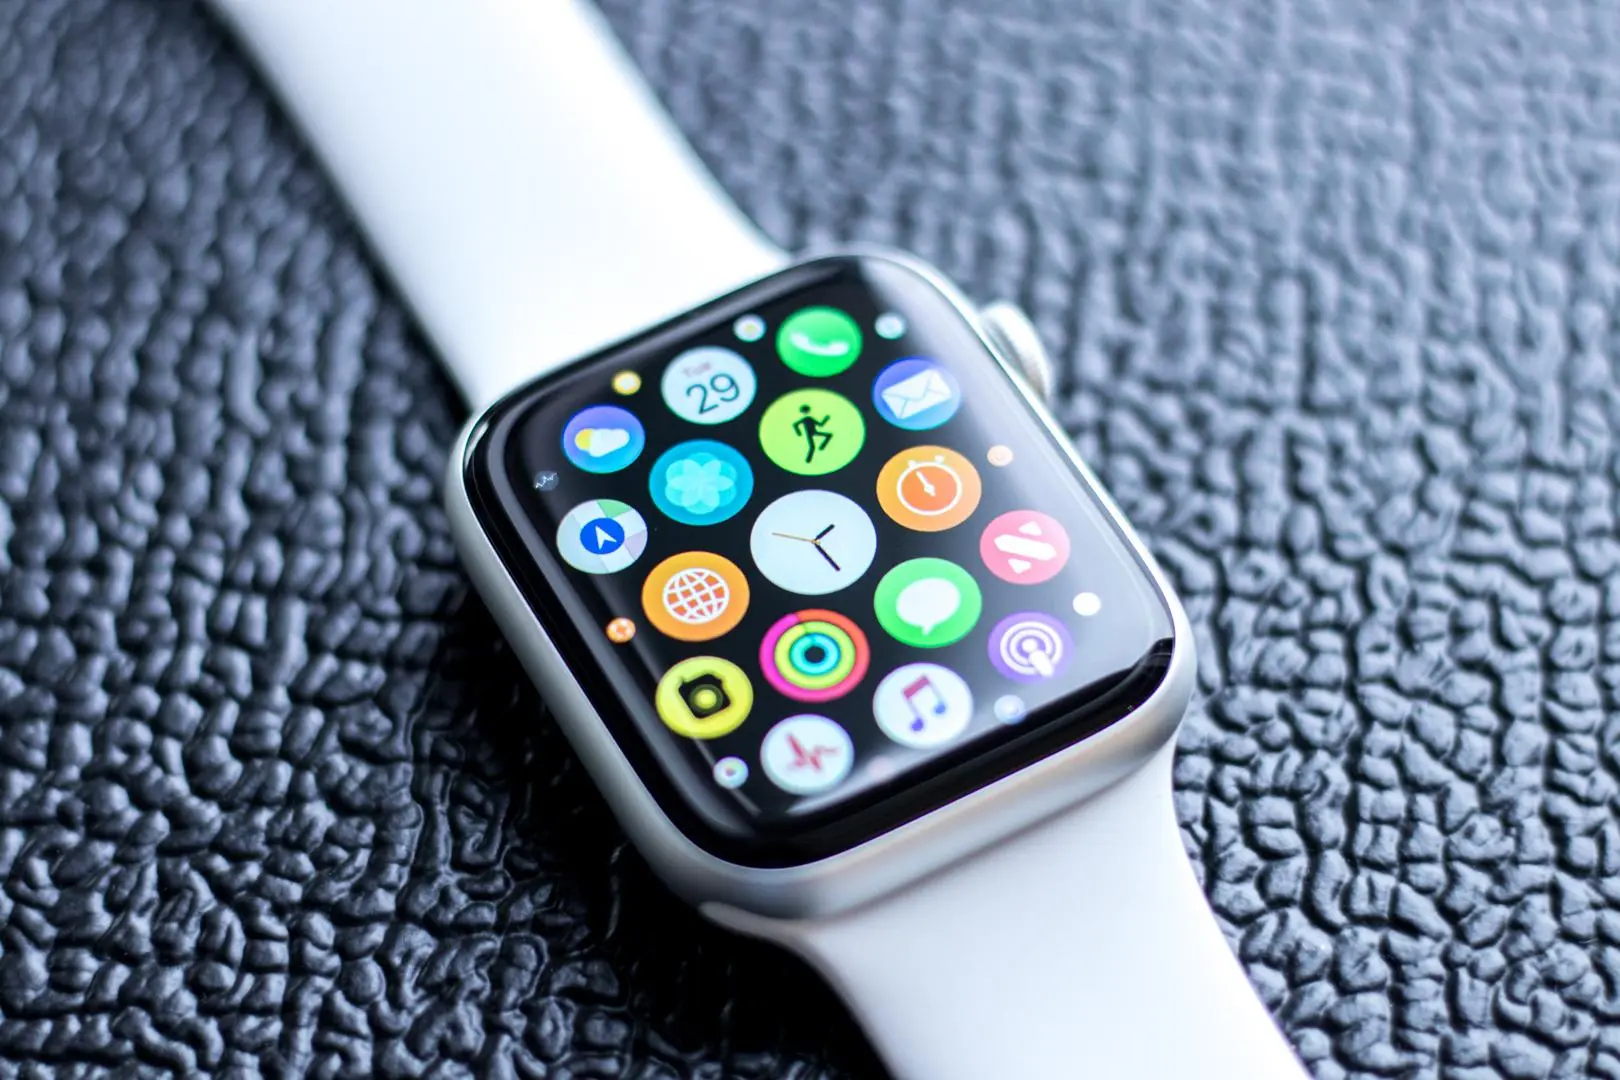 Apple Watch Series 4: Precio, lanzamiento, diseño y novedades